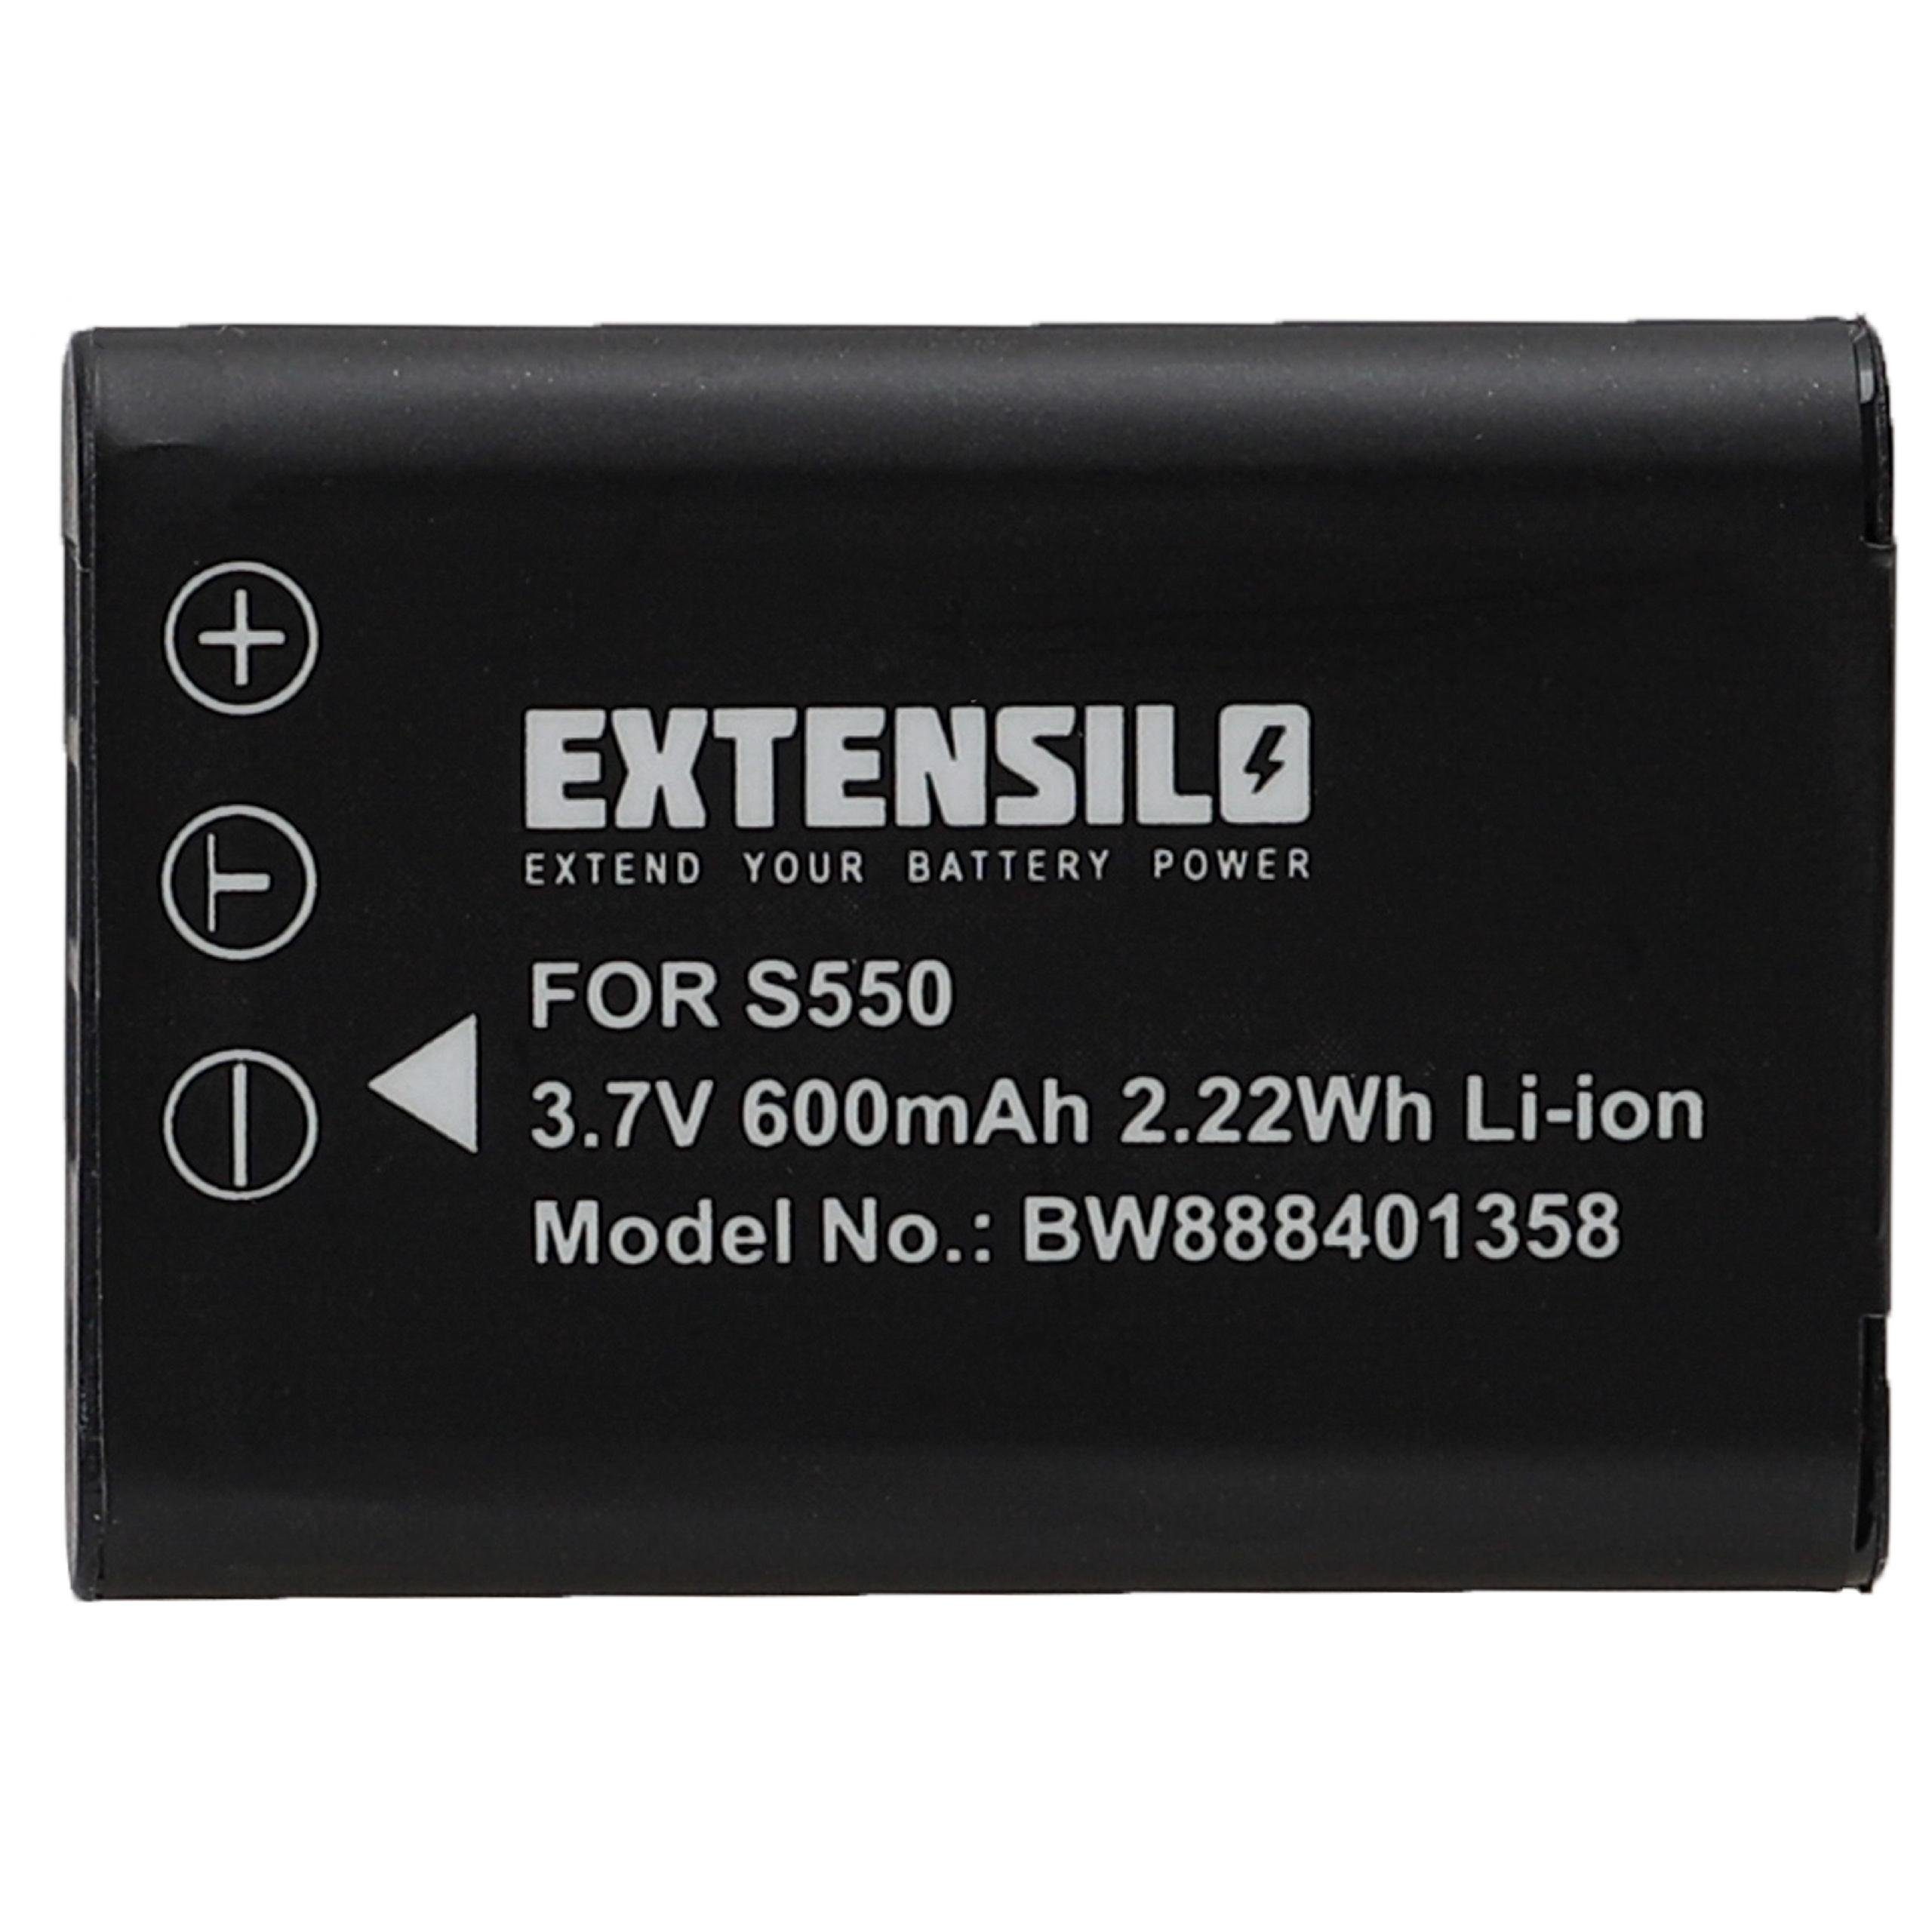 Extensilo kompatibel mit Pentax Optio W80, W60, M50, L50, S1, M60, V20 Kamera-Akku Li-Ion 600 mAh (3,7 V)